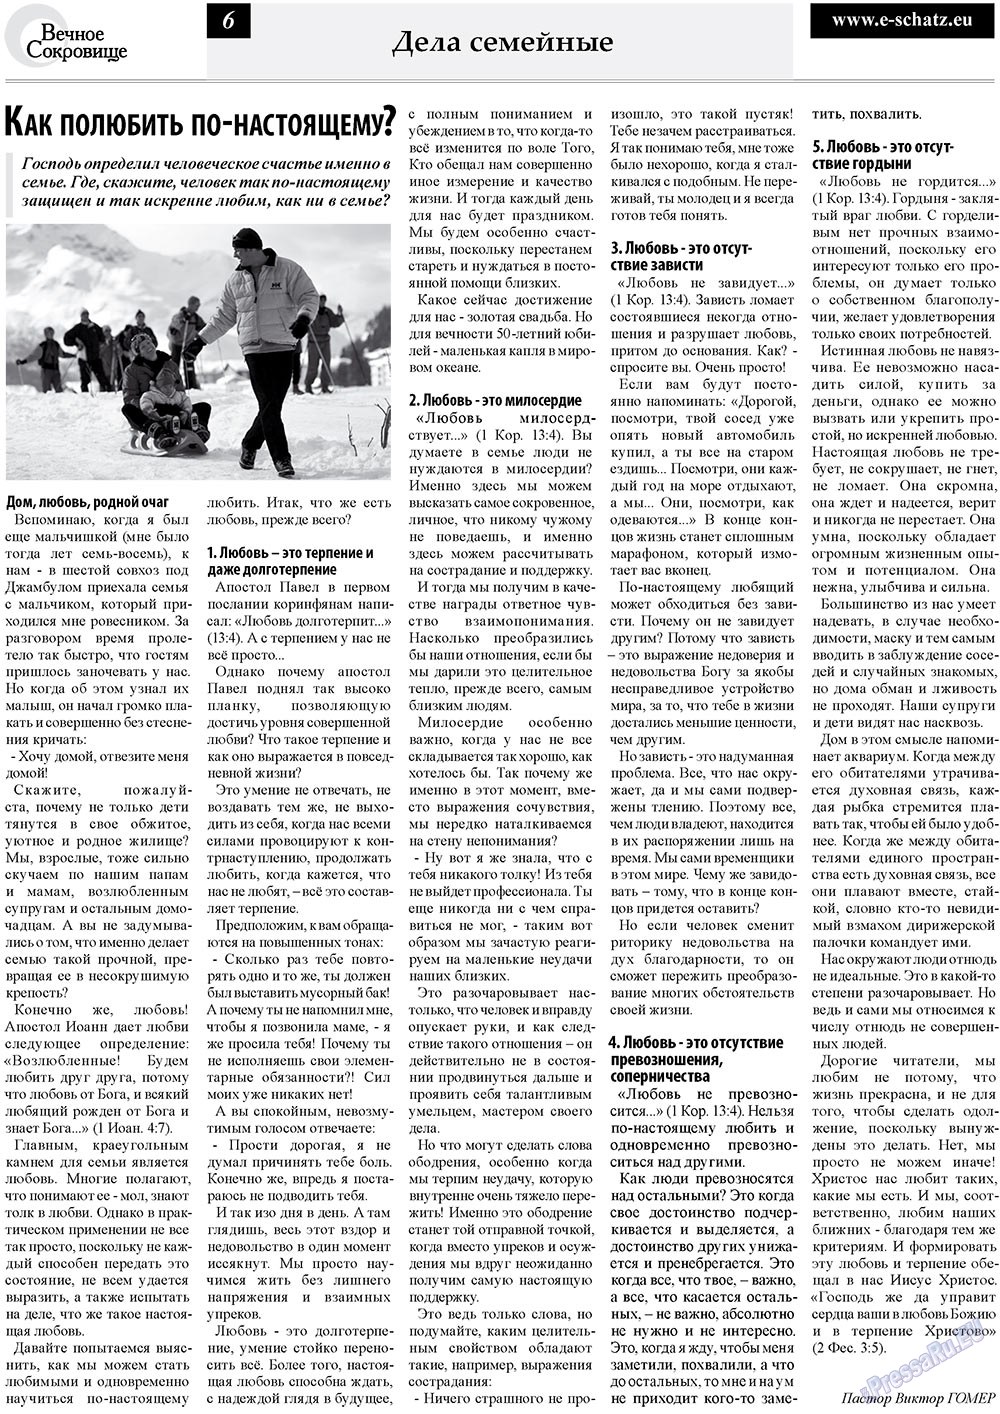 Вечное сокровище (газета). 2010 год, номер 3, стр. 6